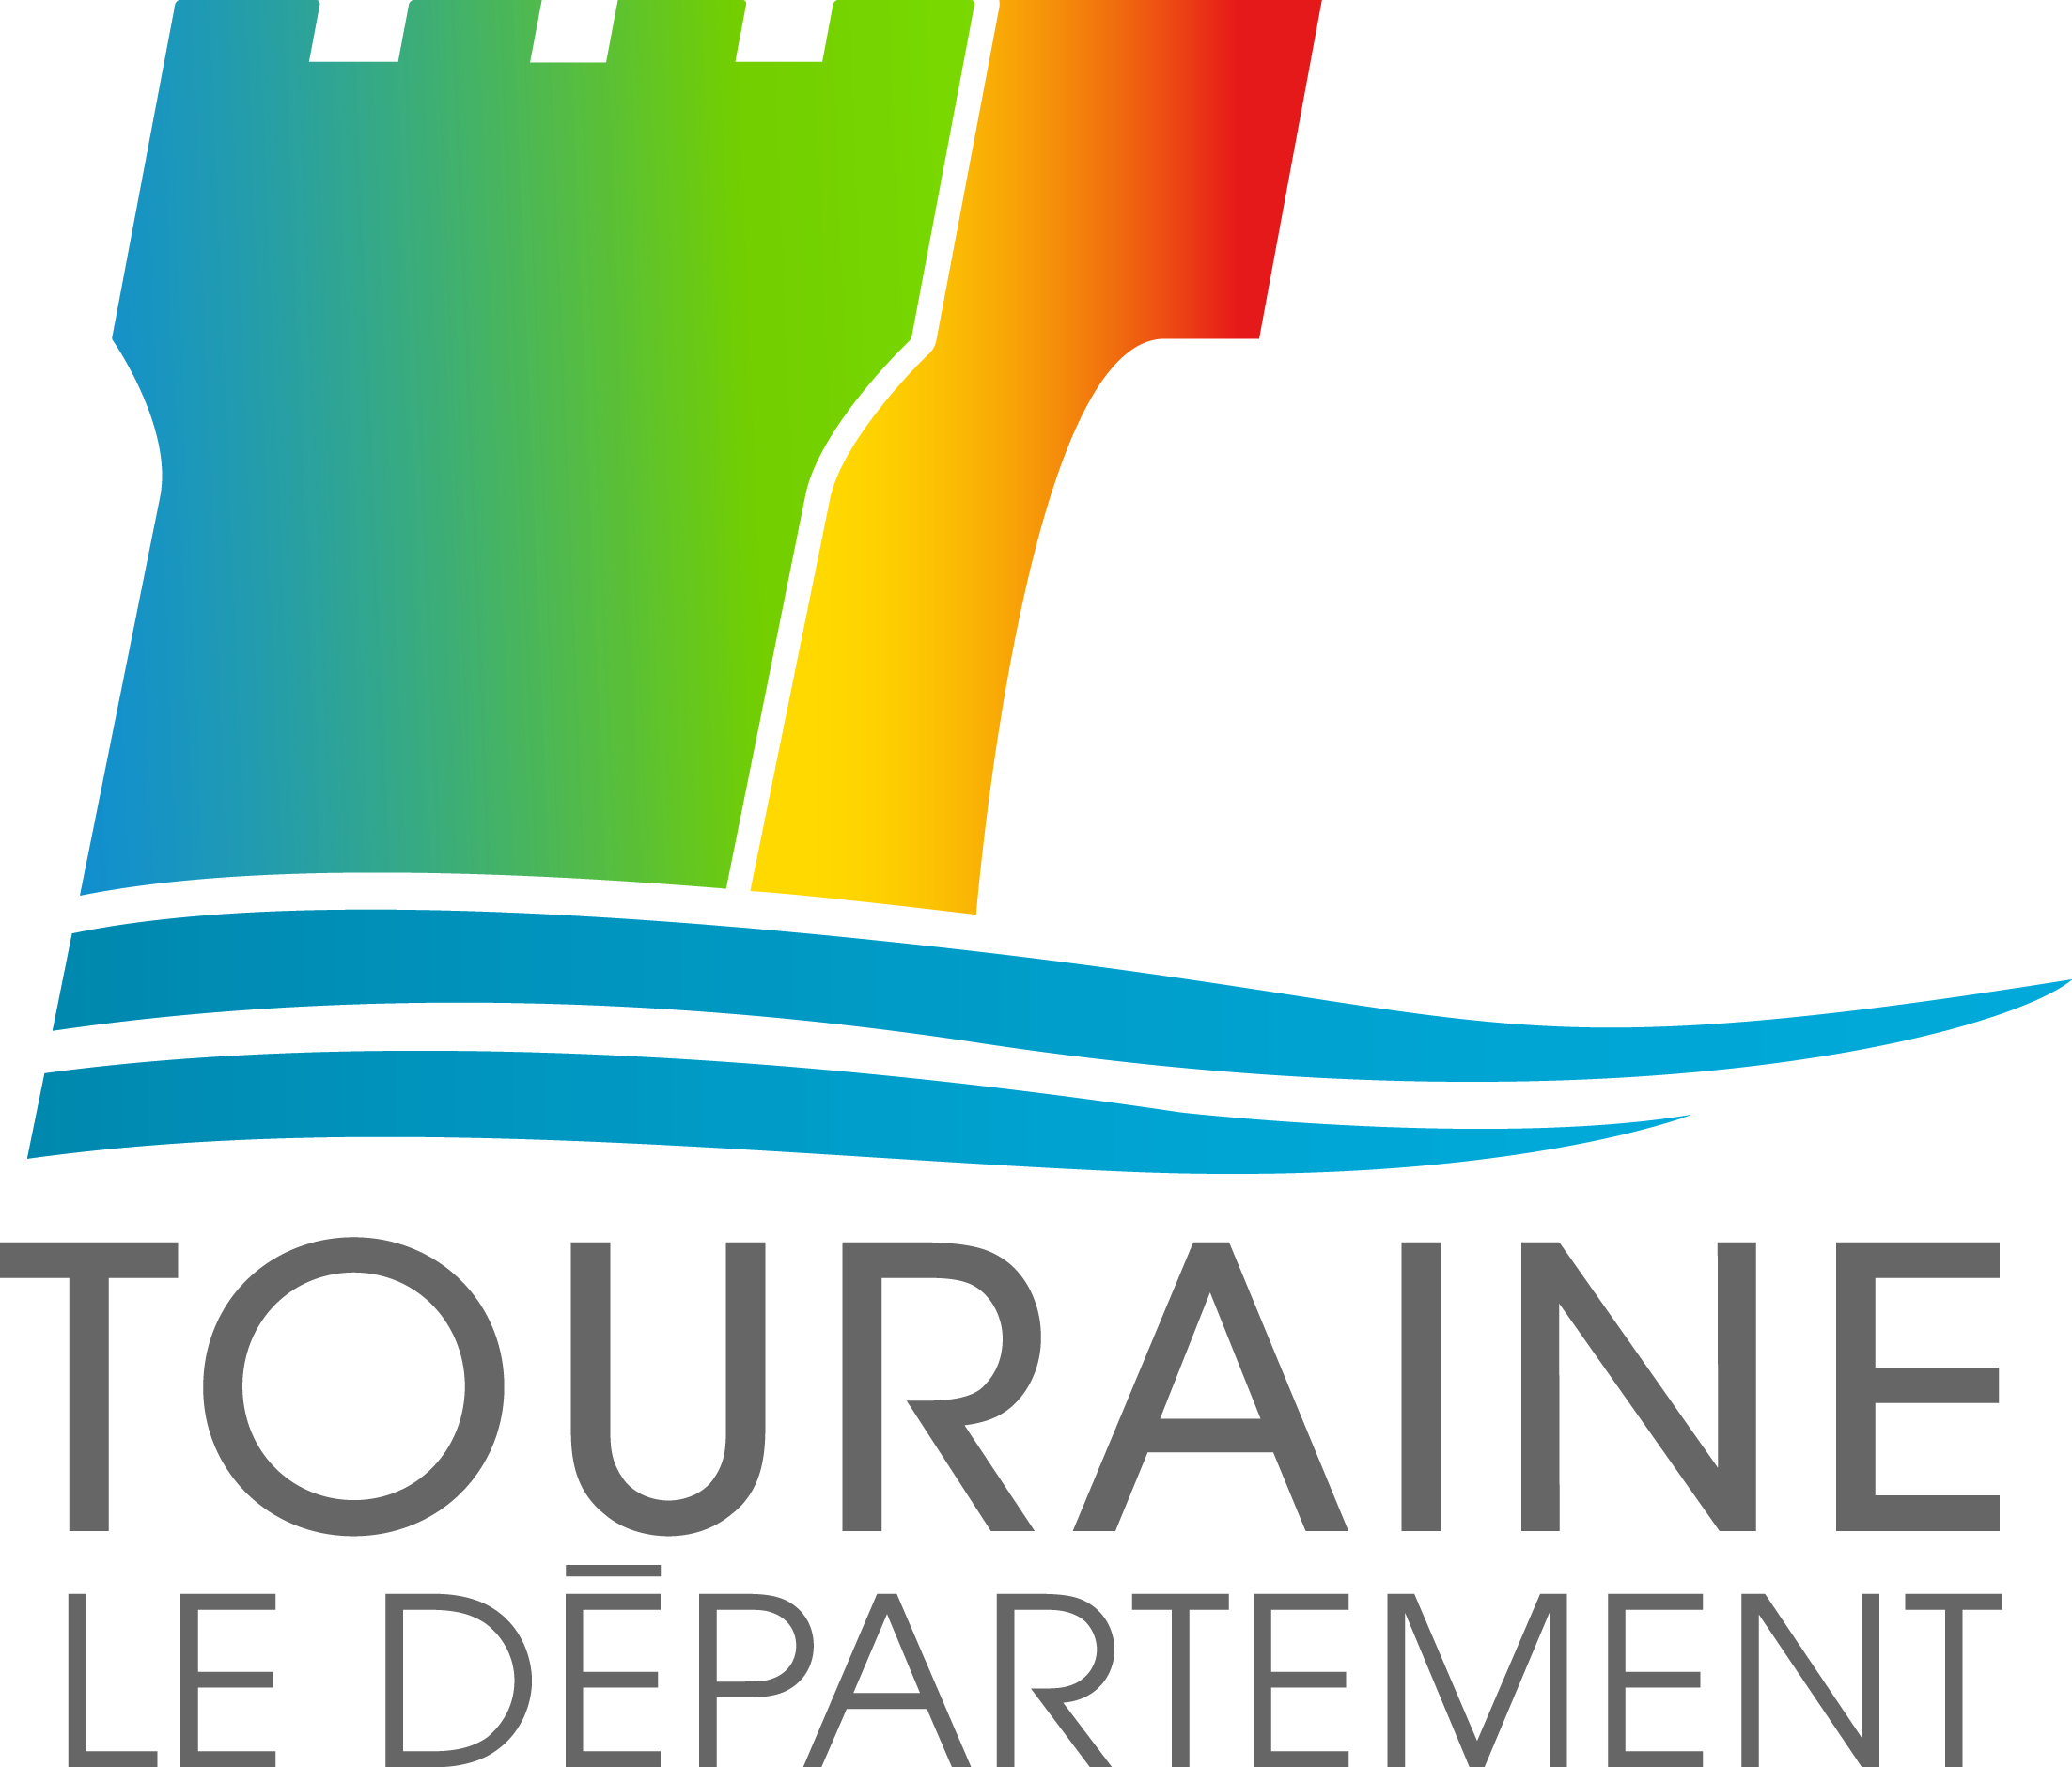 logo TOURAINE Q